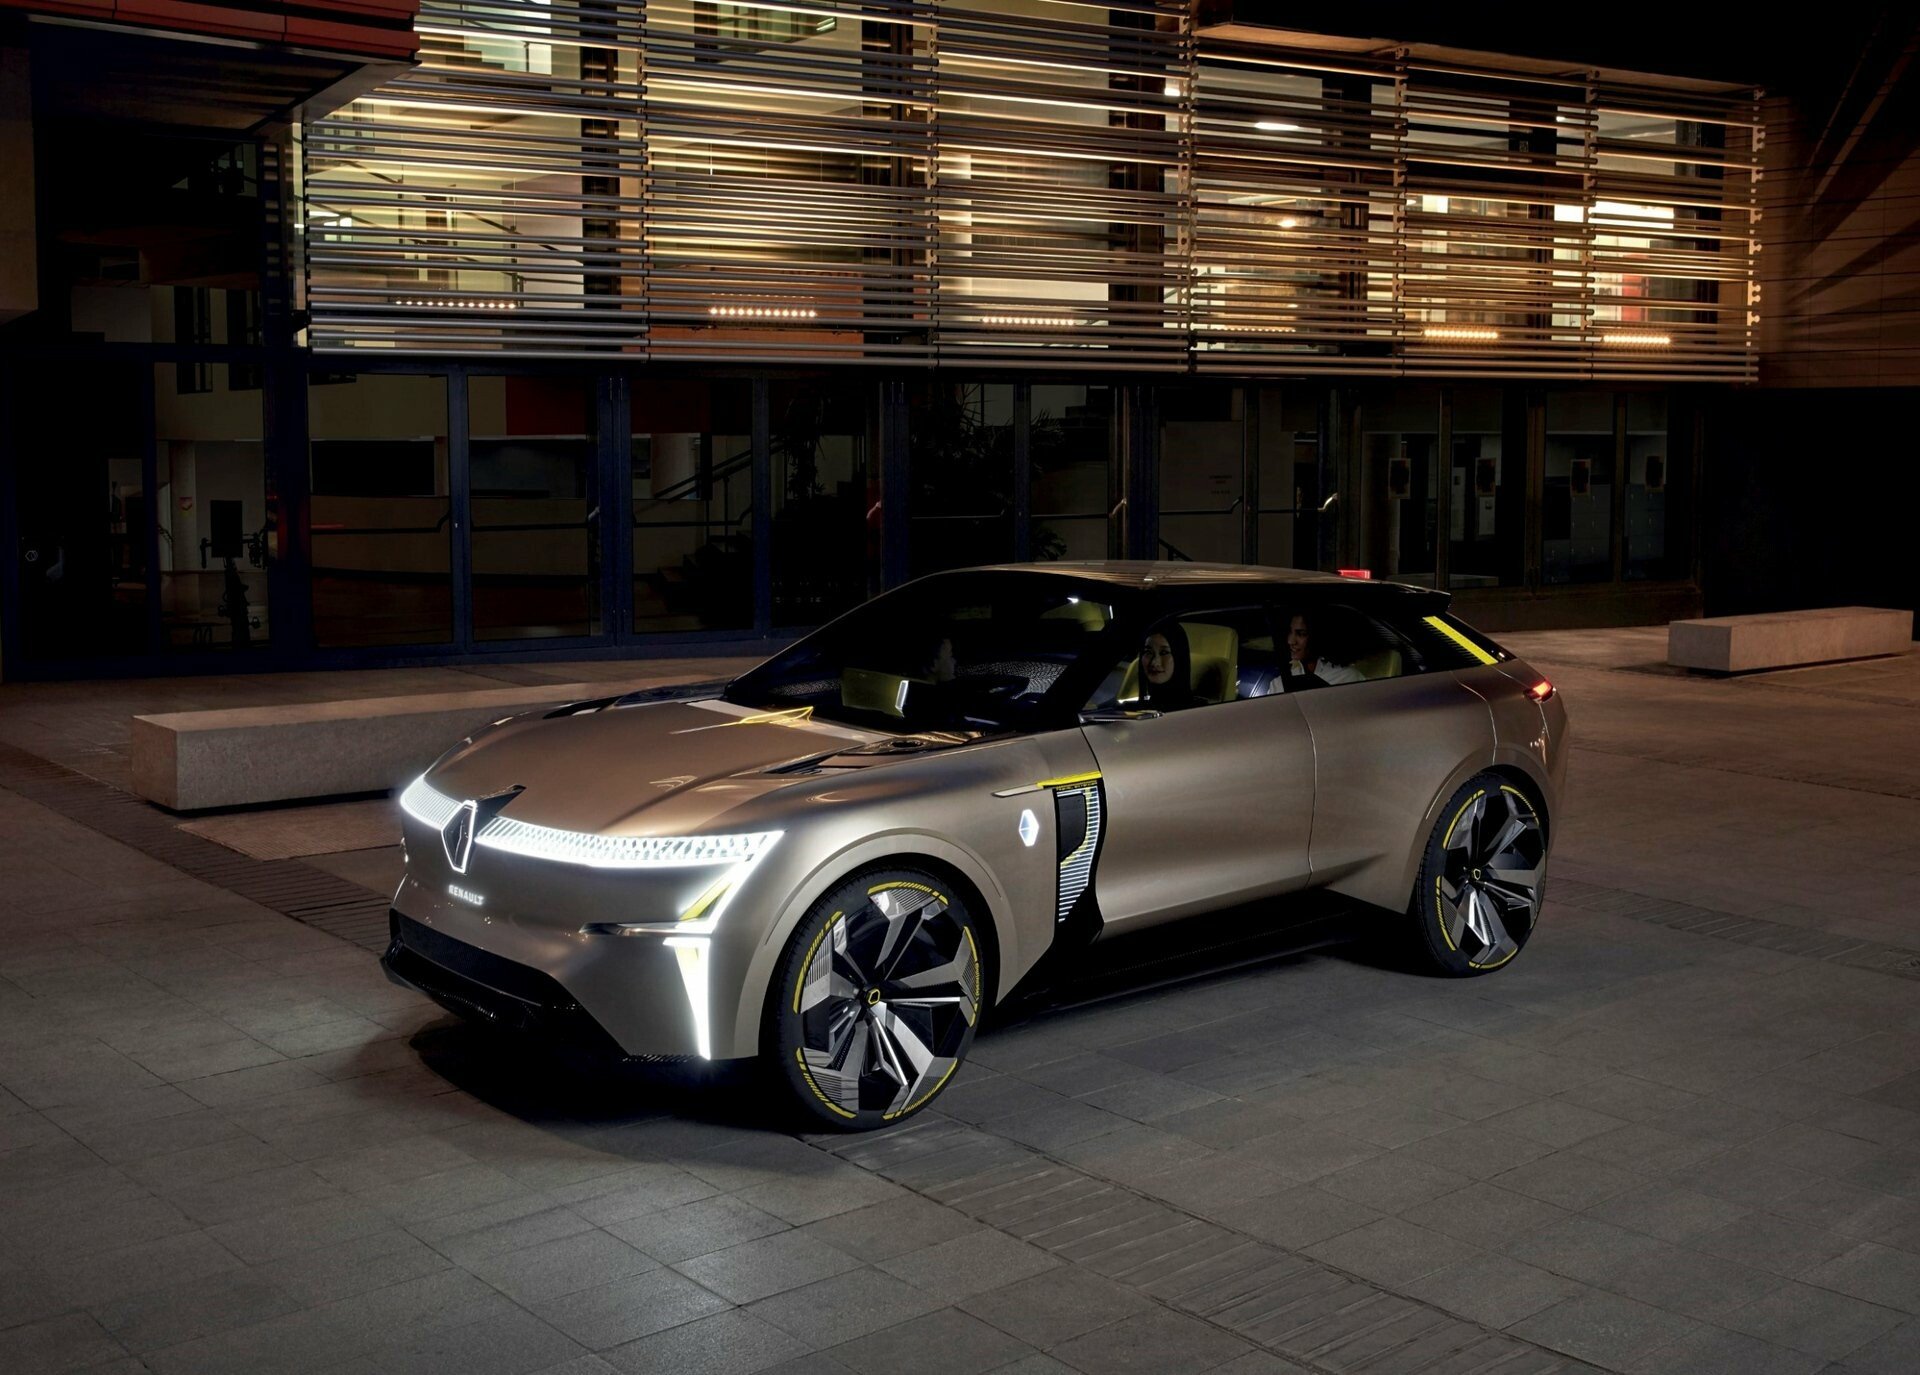 Το Renault Morphoz είναι το ηλεκτρικό αυτοκίνητο του μέλλοντος